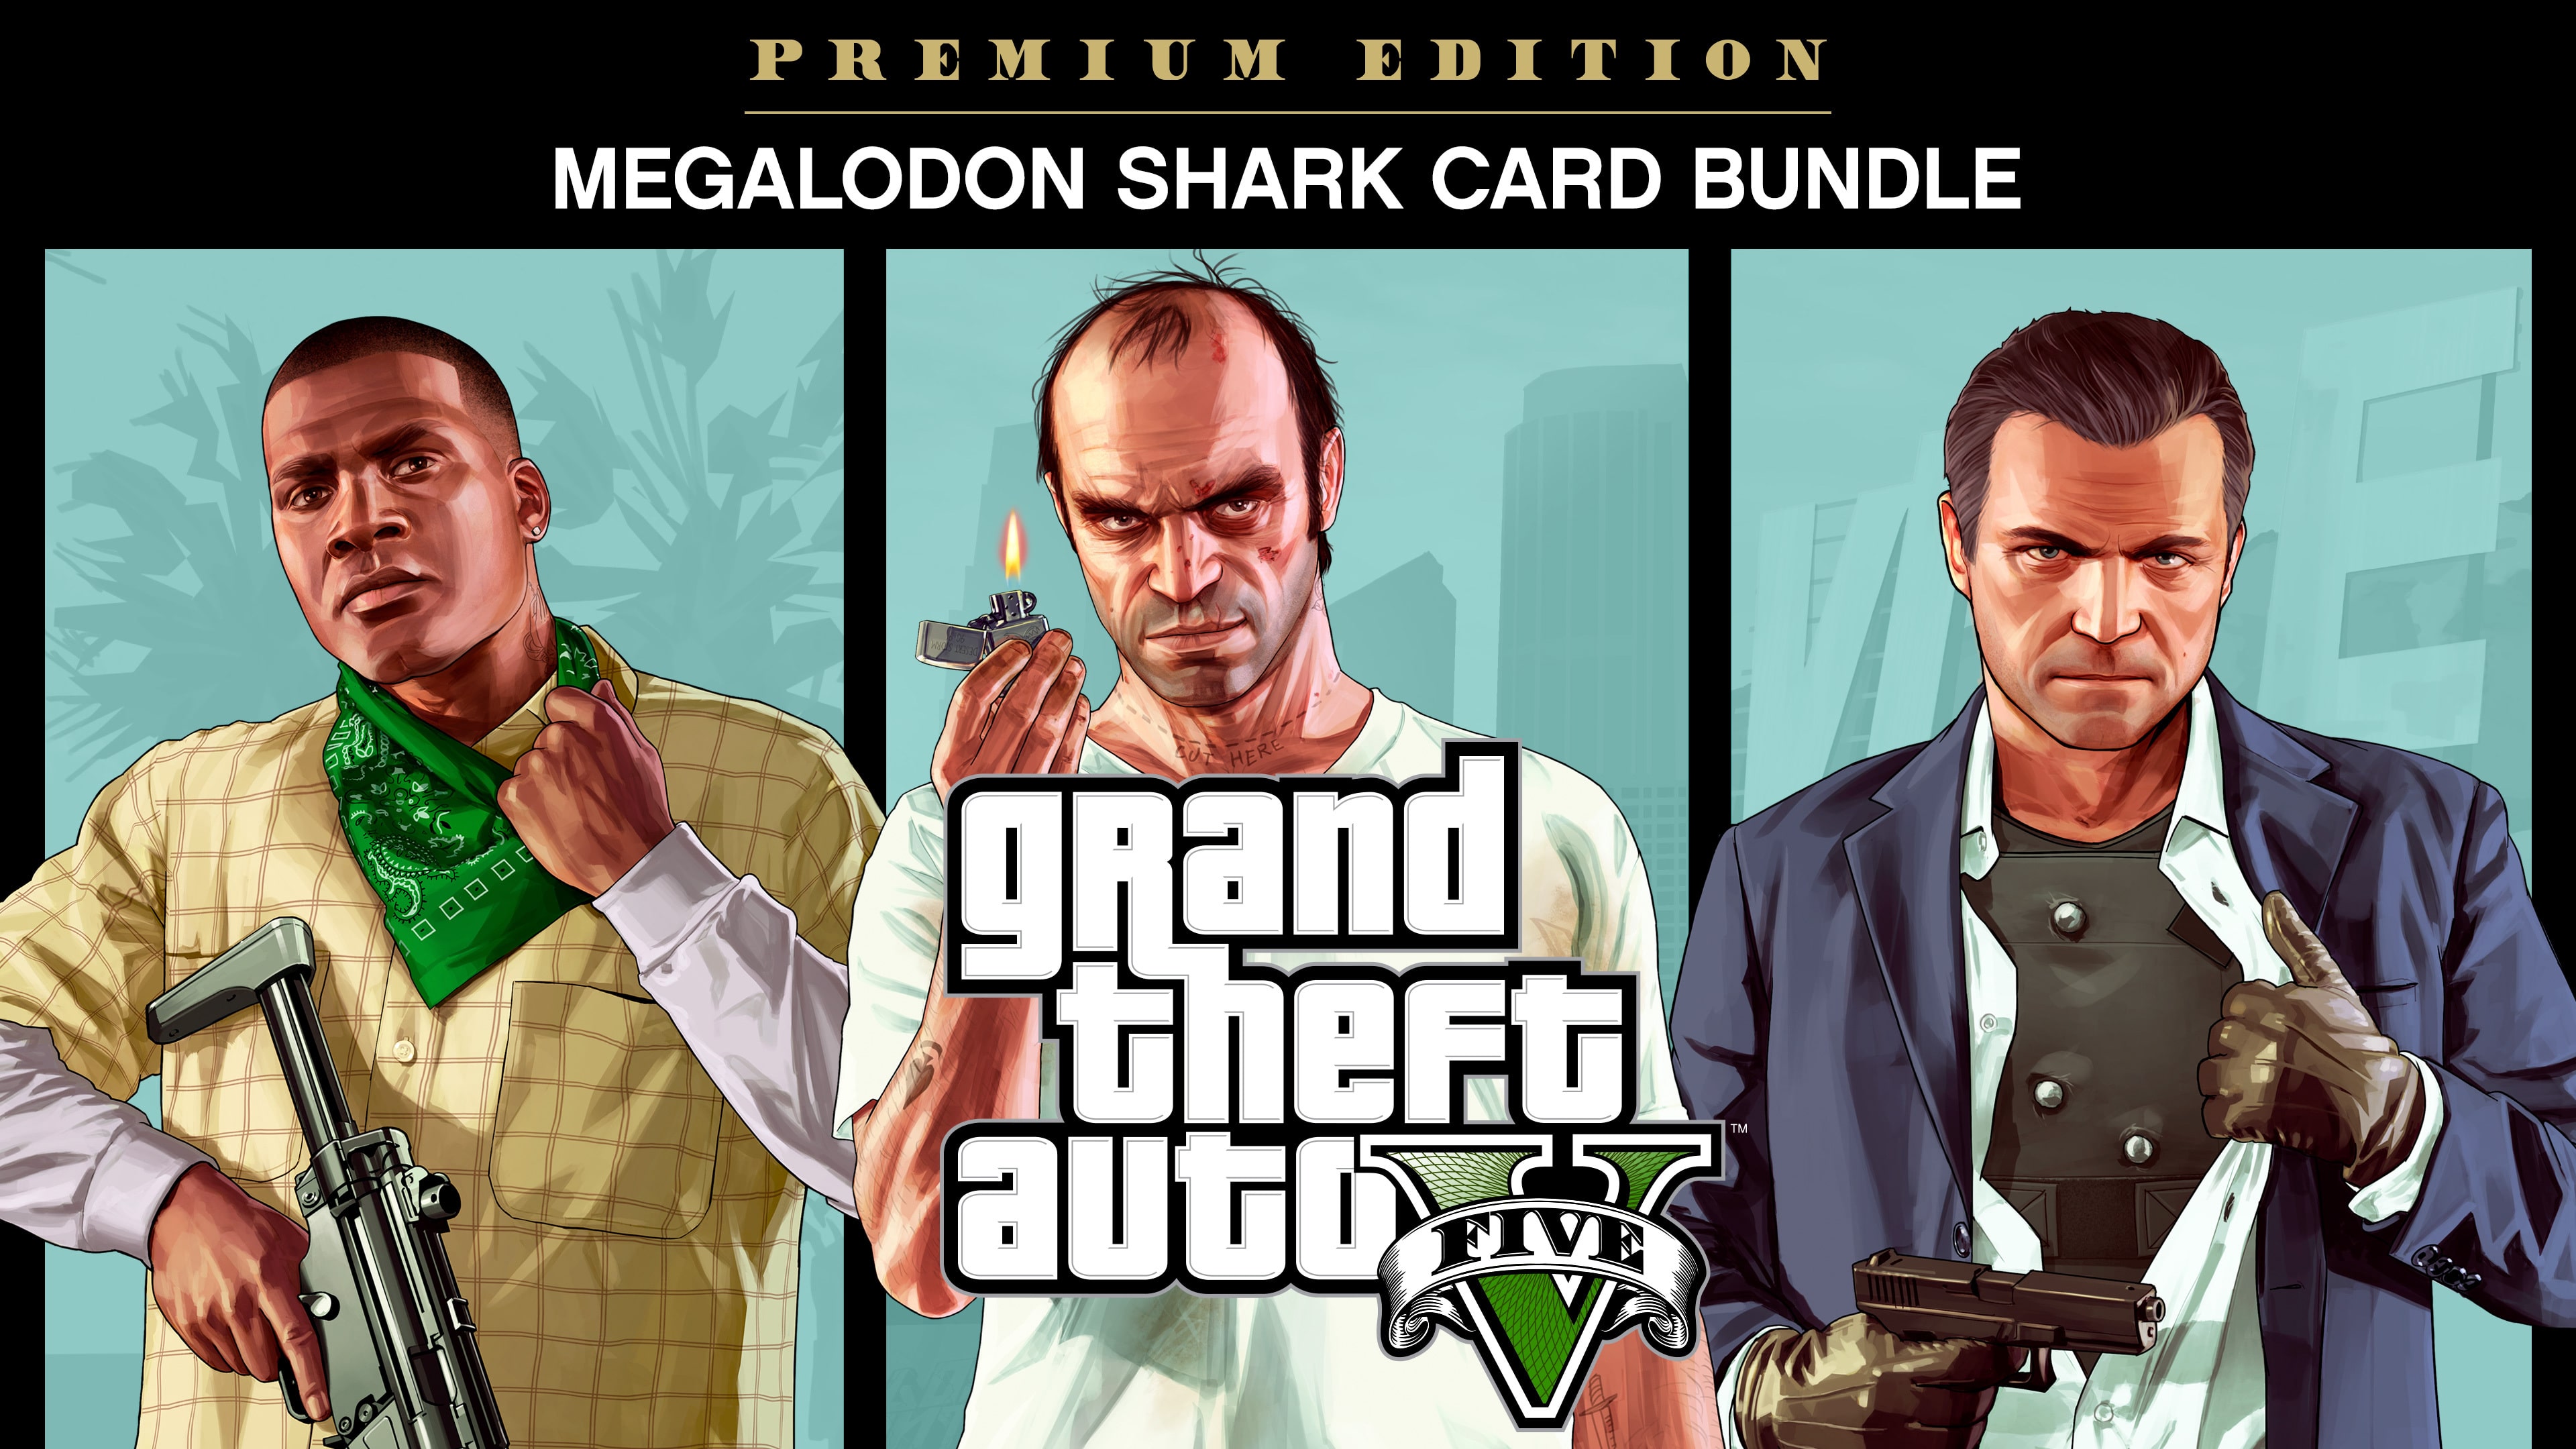 Grand Theft Auto V: Edición Premium y tarjeta Tiburón megalodonte